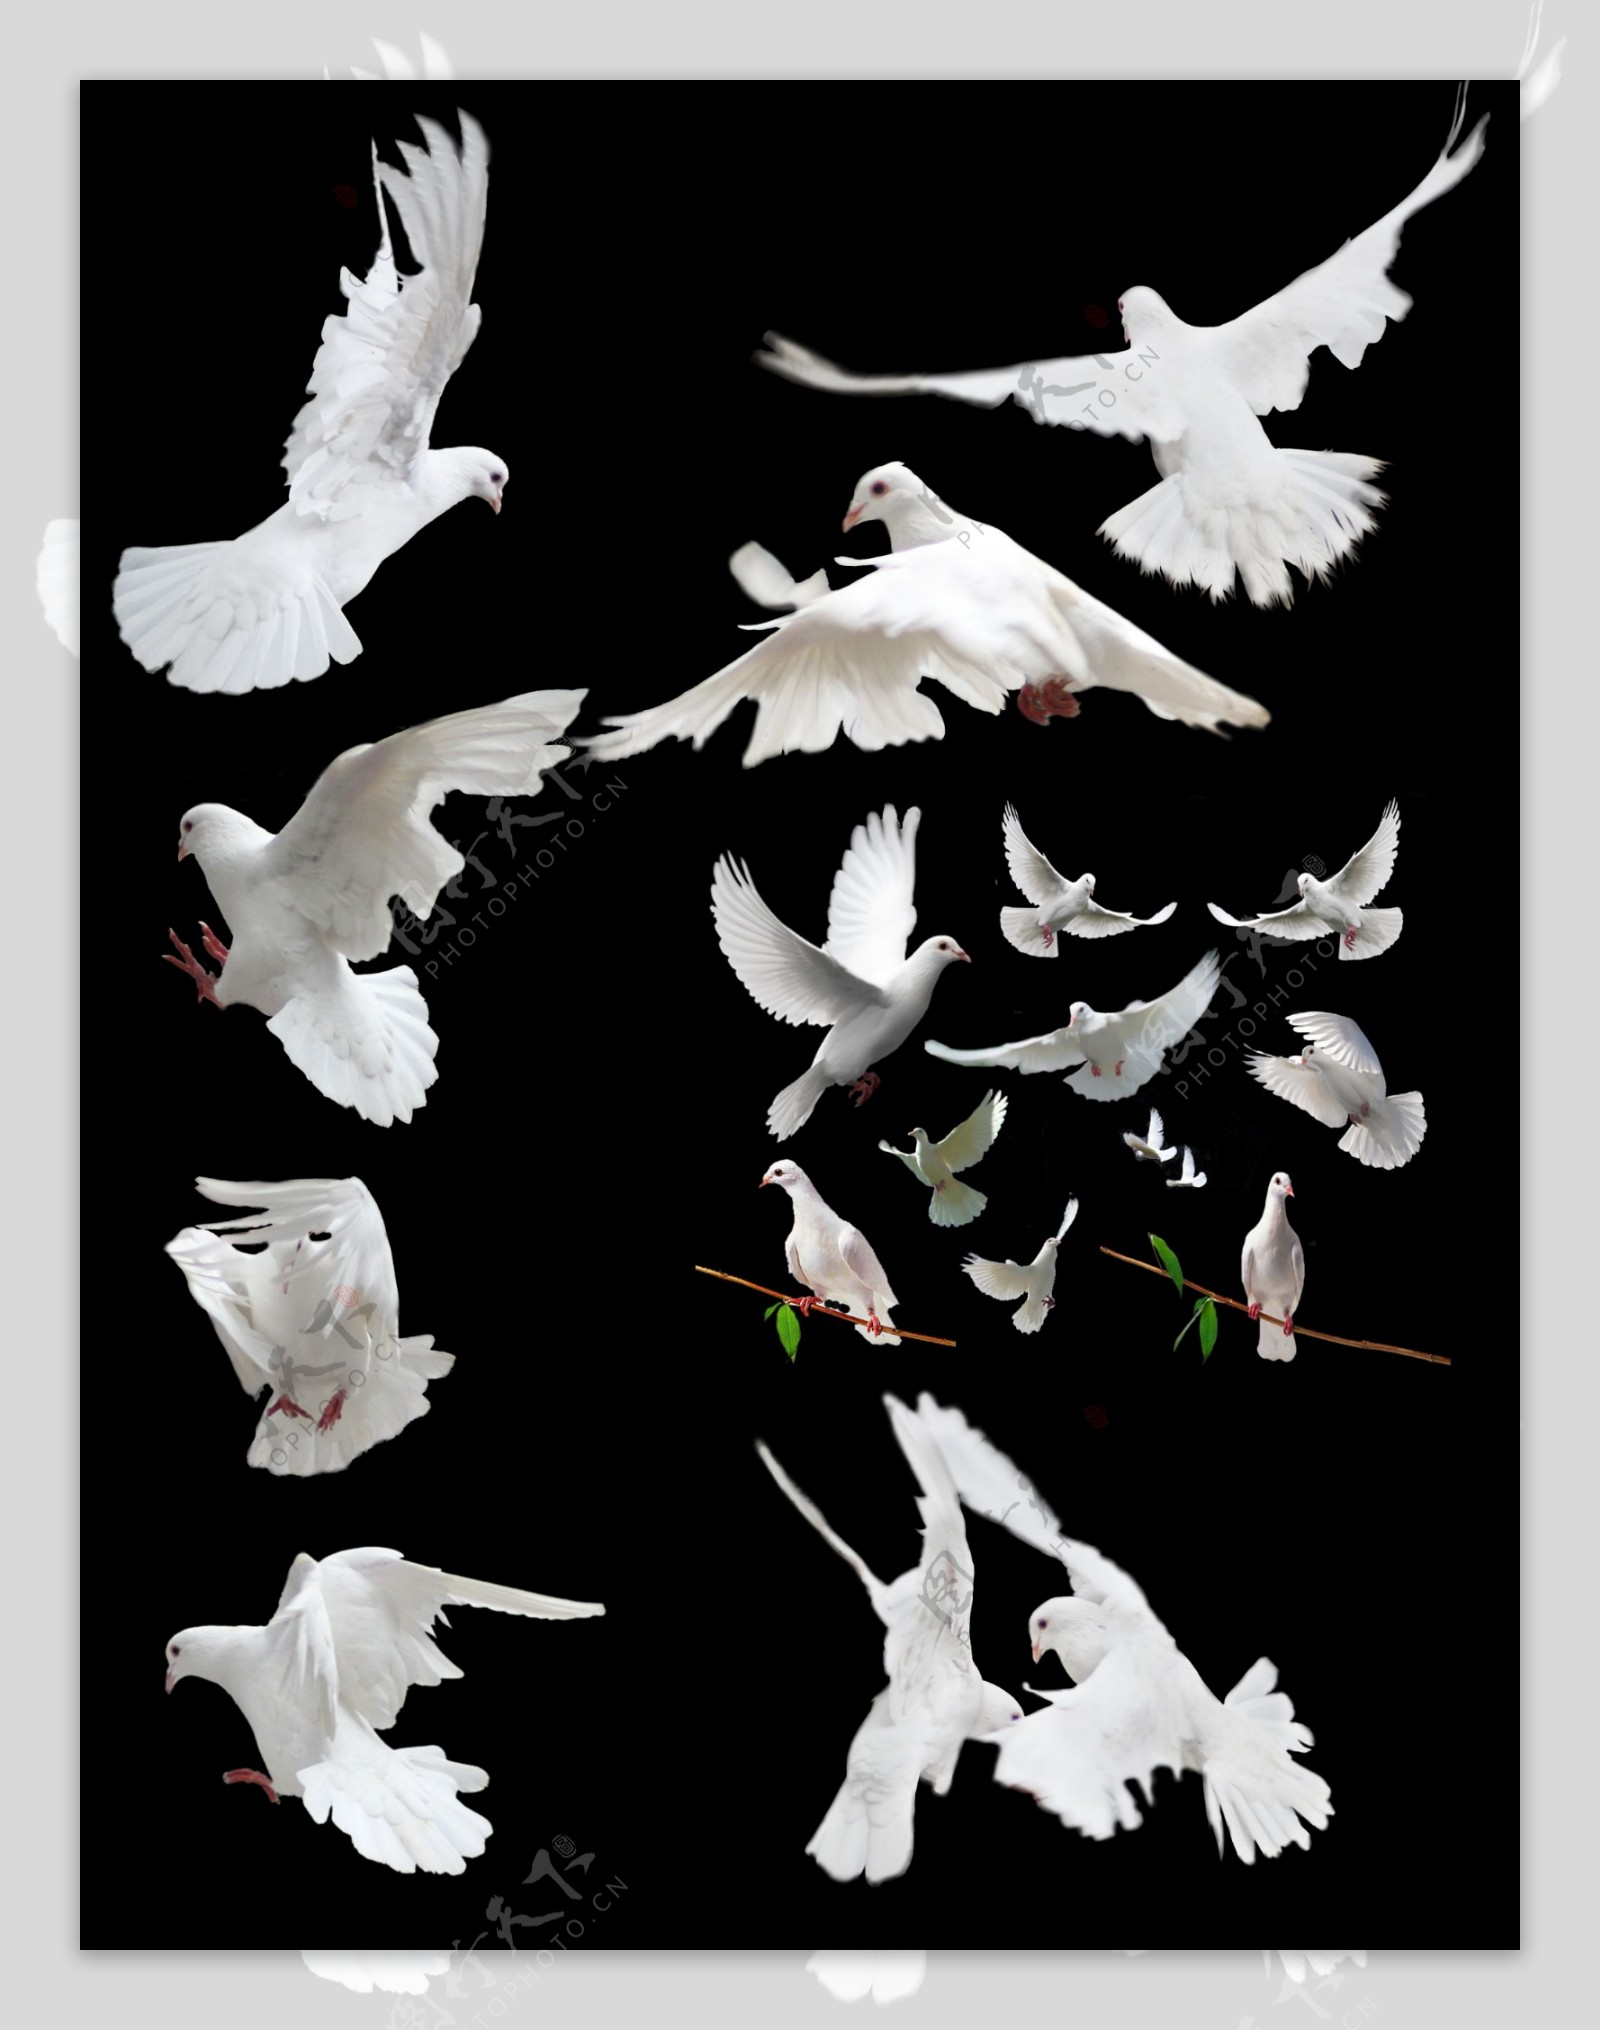 纯白色鸽子展翅起飞自由翱翔图片高清桌面壁纸 -桌面天下（Desktx.com）